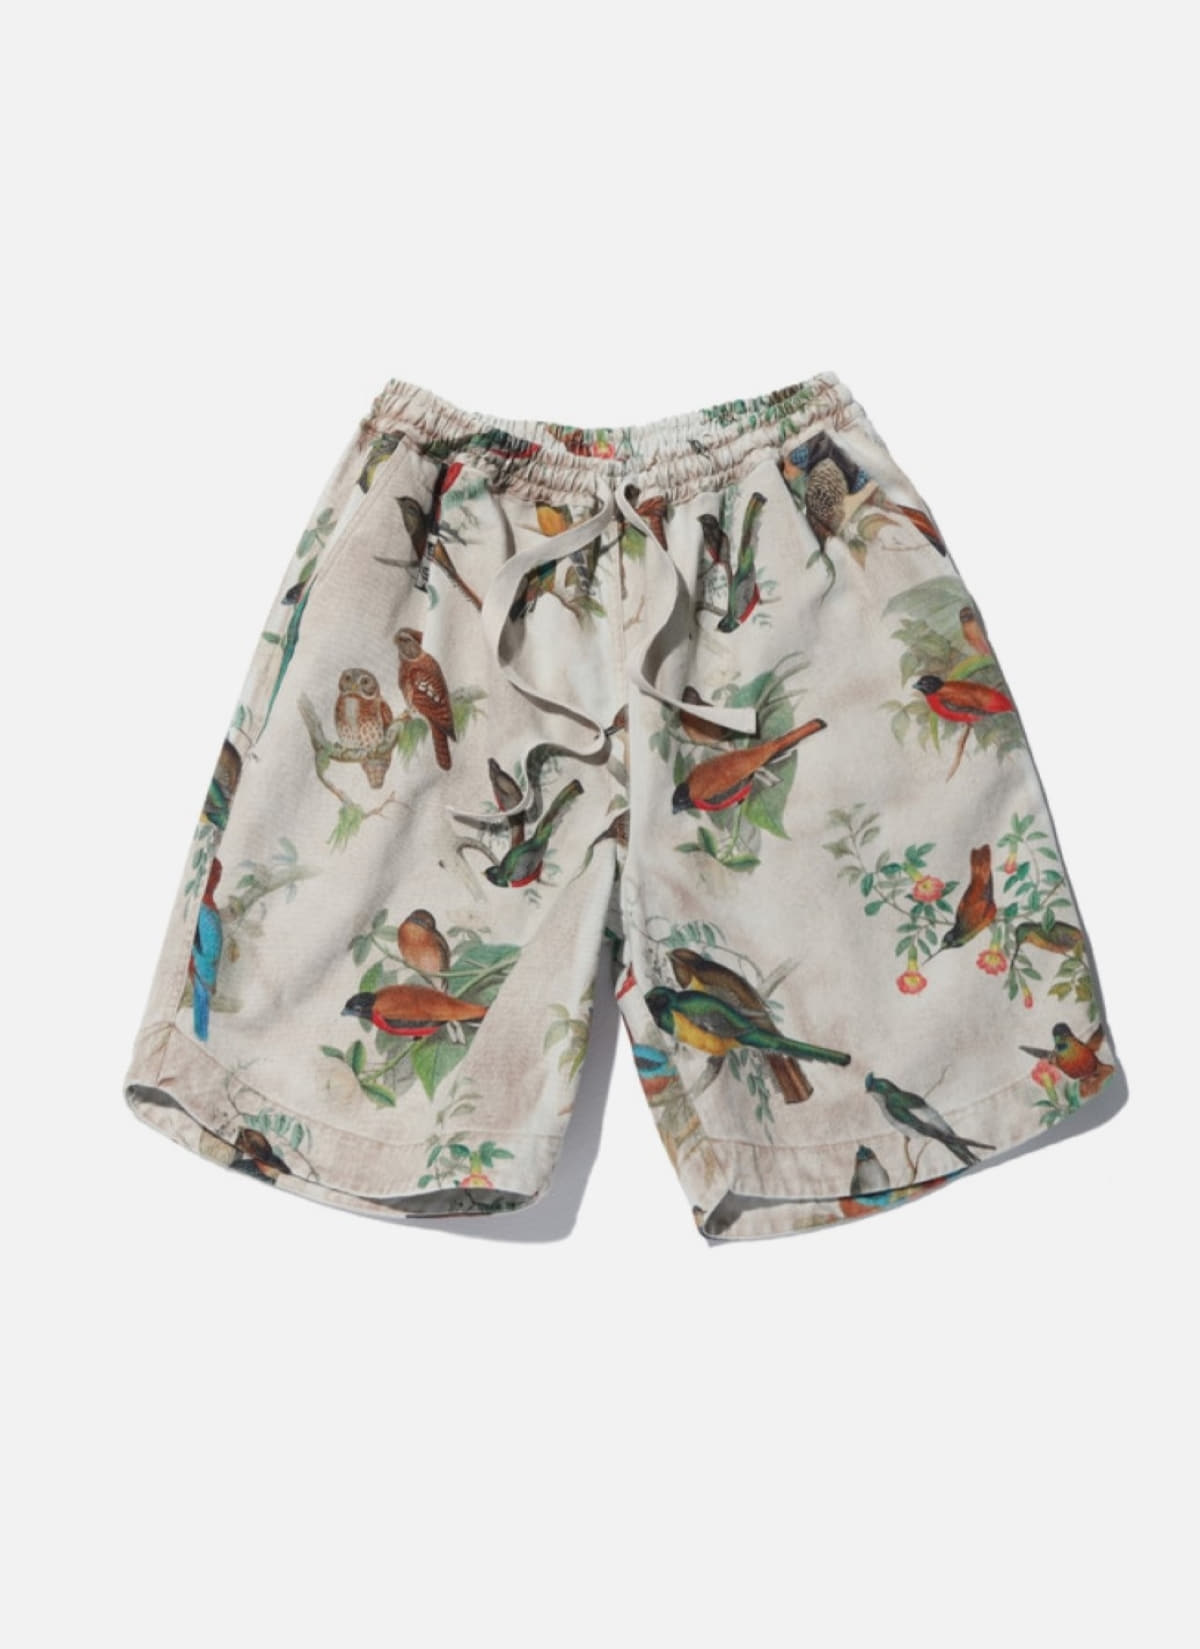 Bird print bermuda pants (Vintage washing)